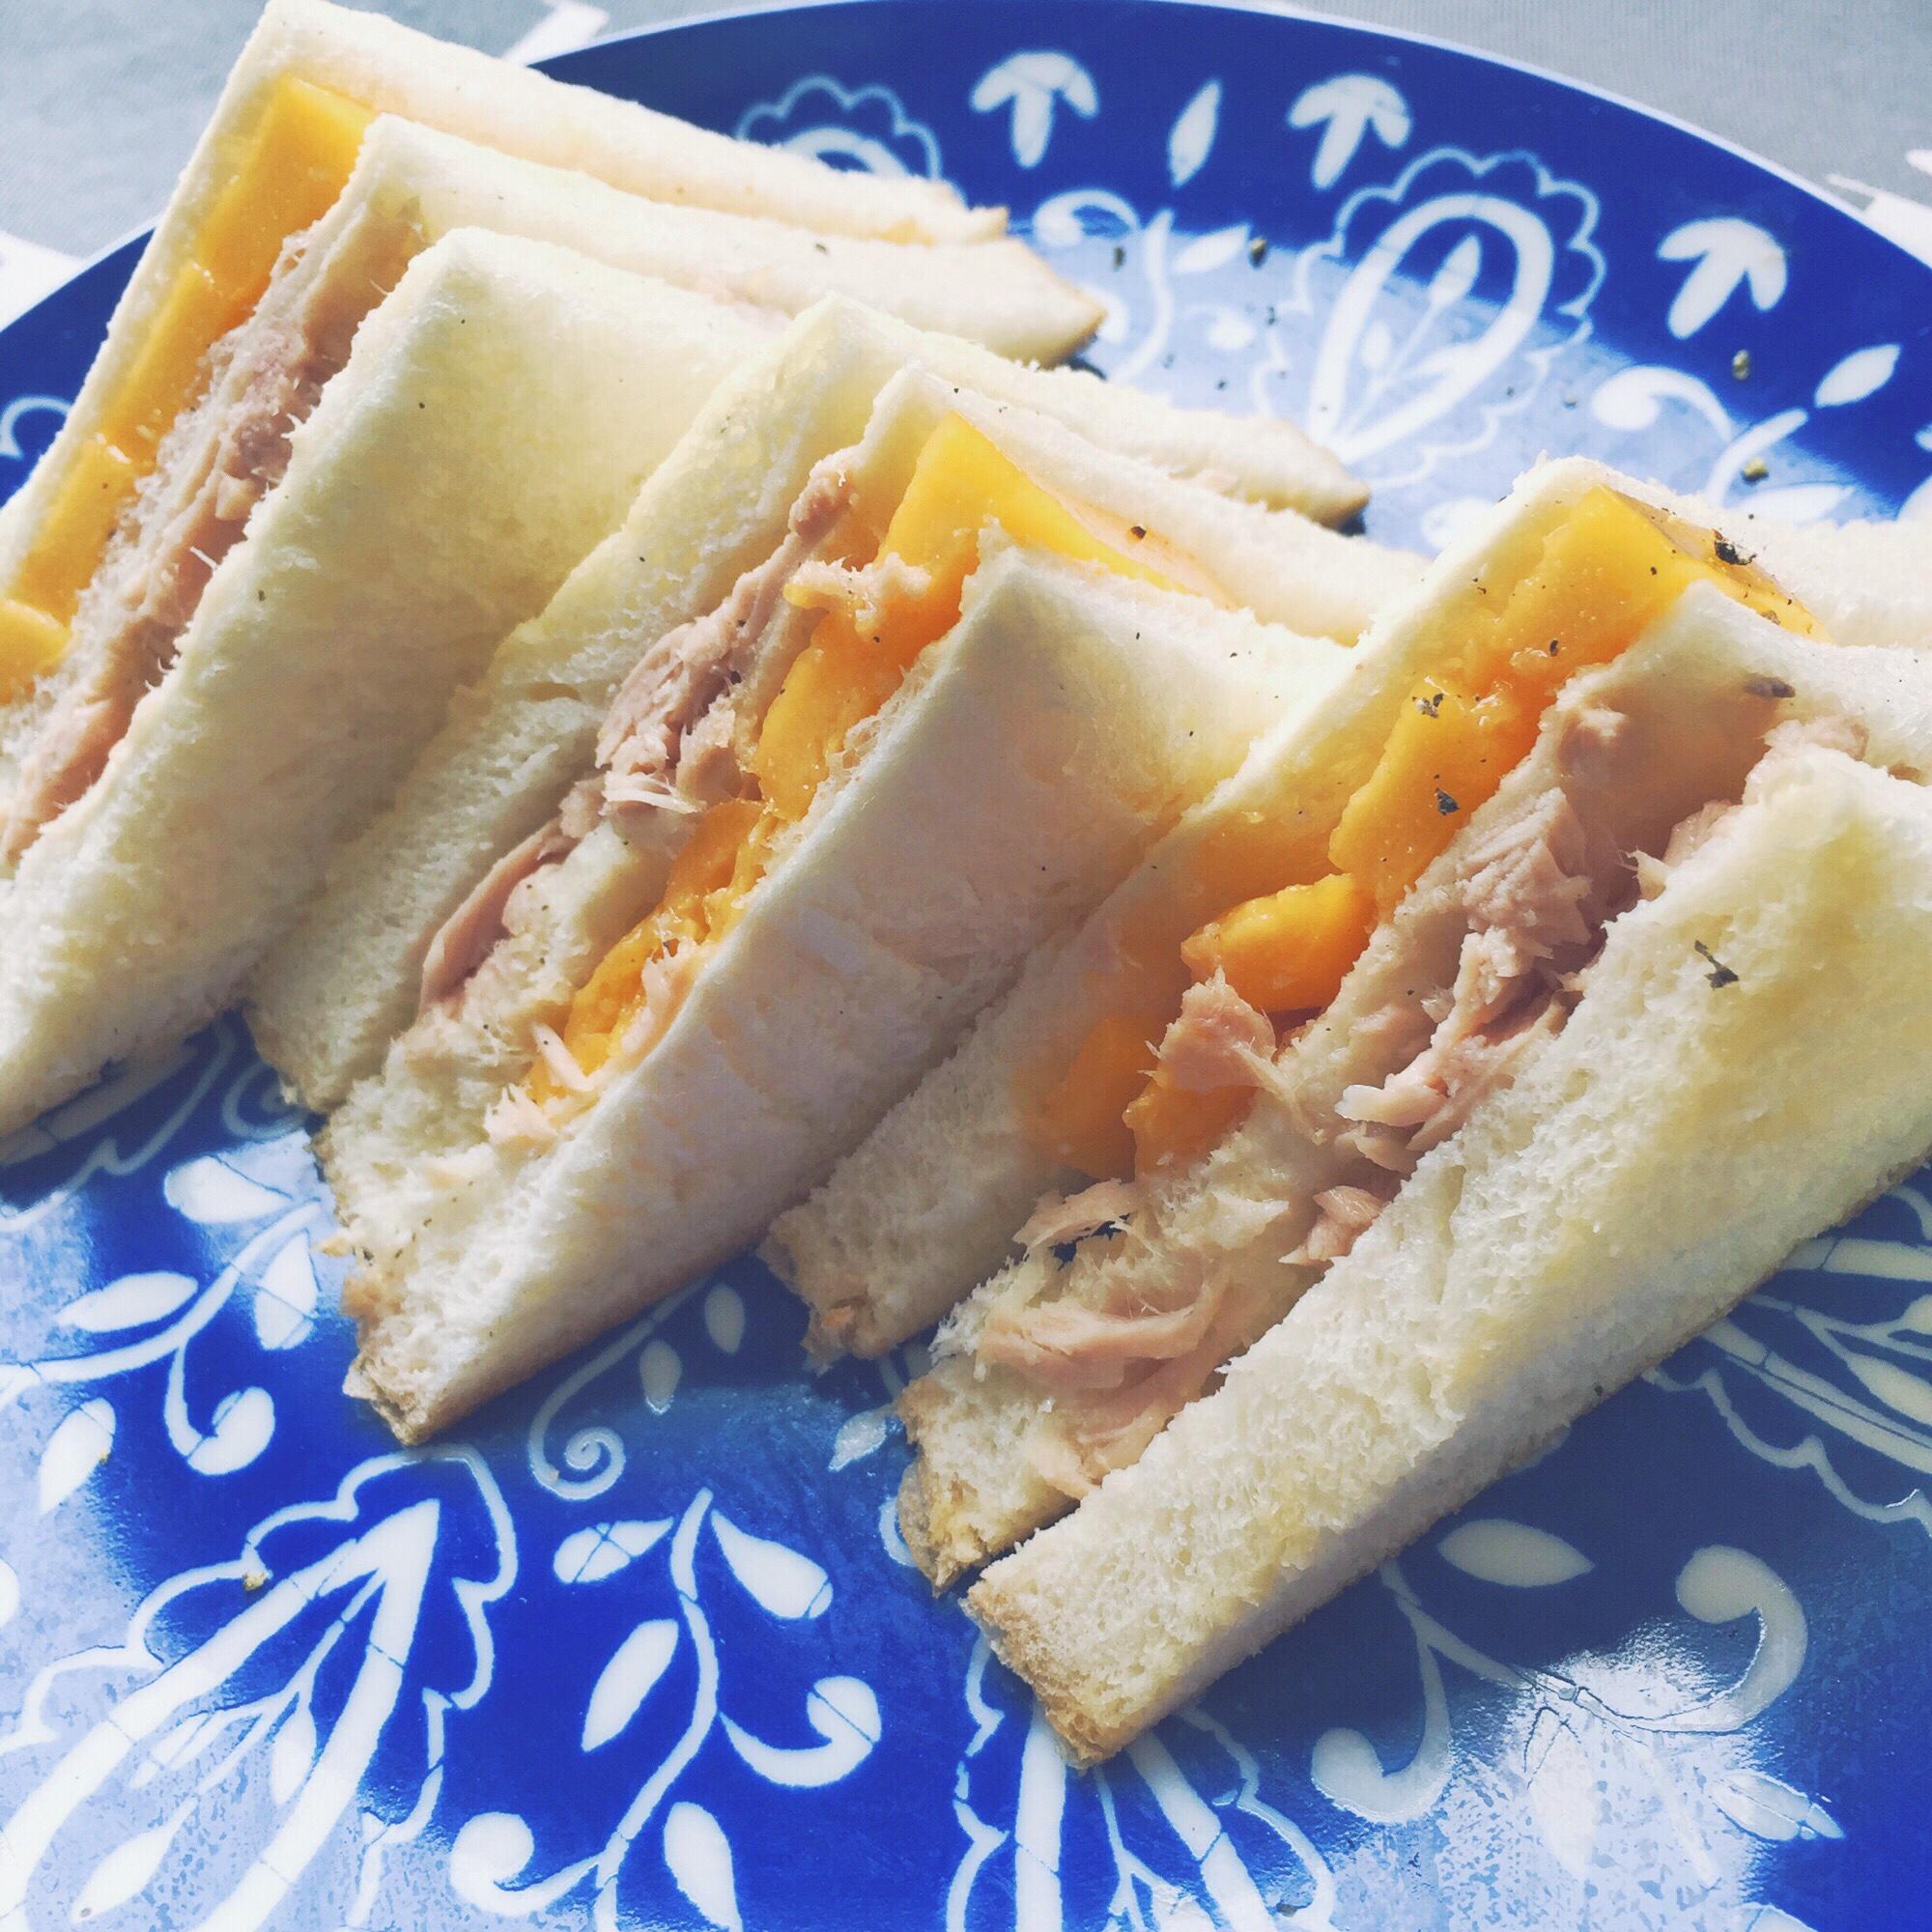 芒果吞拿鱼三明治